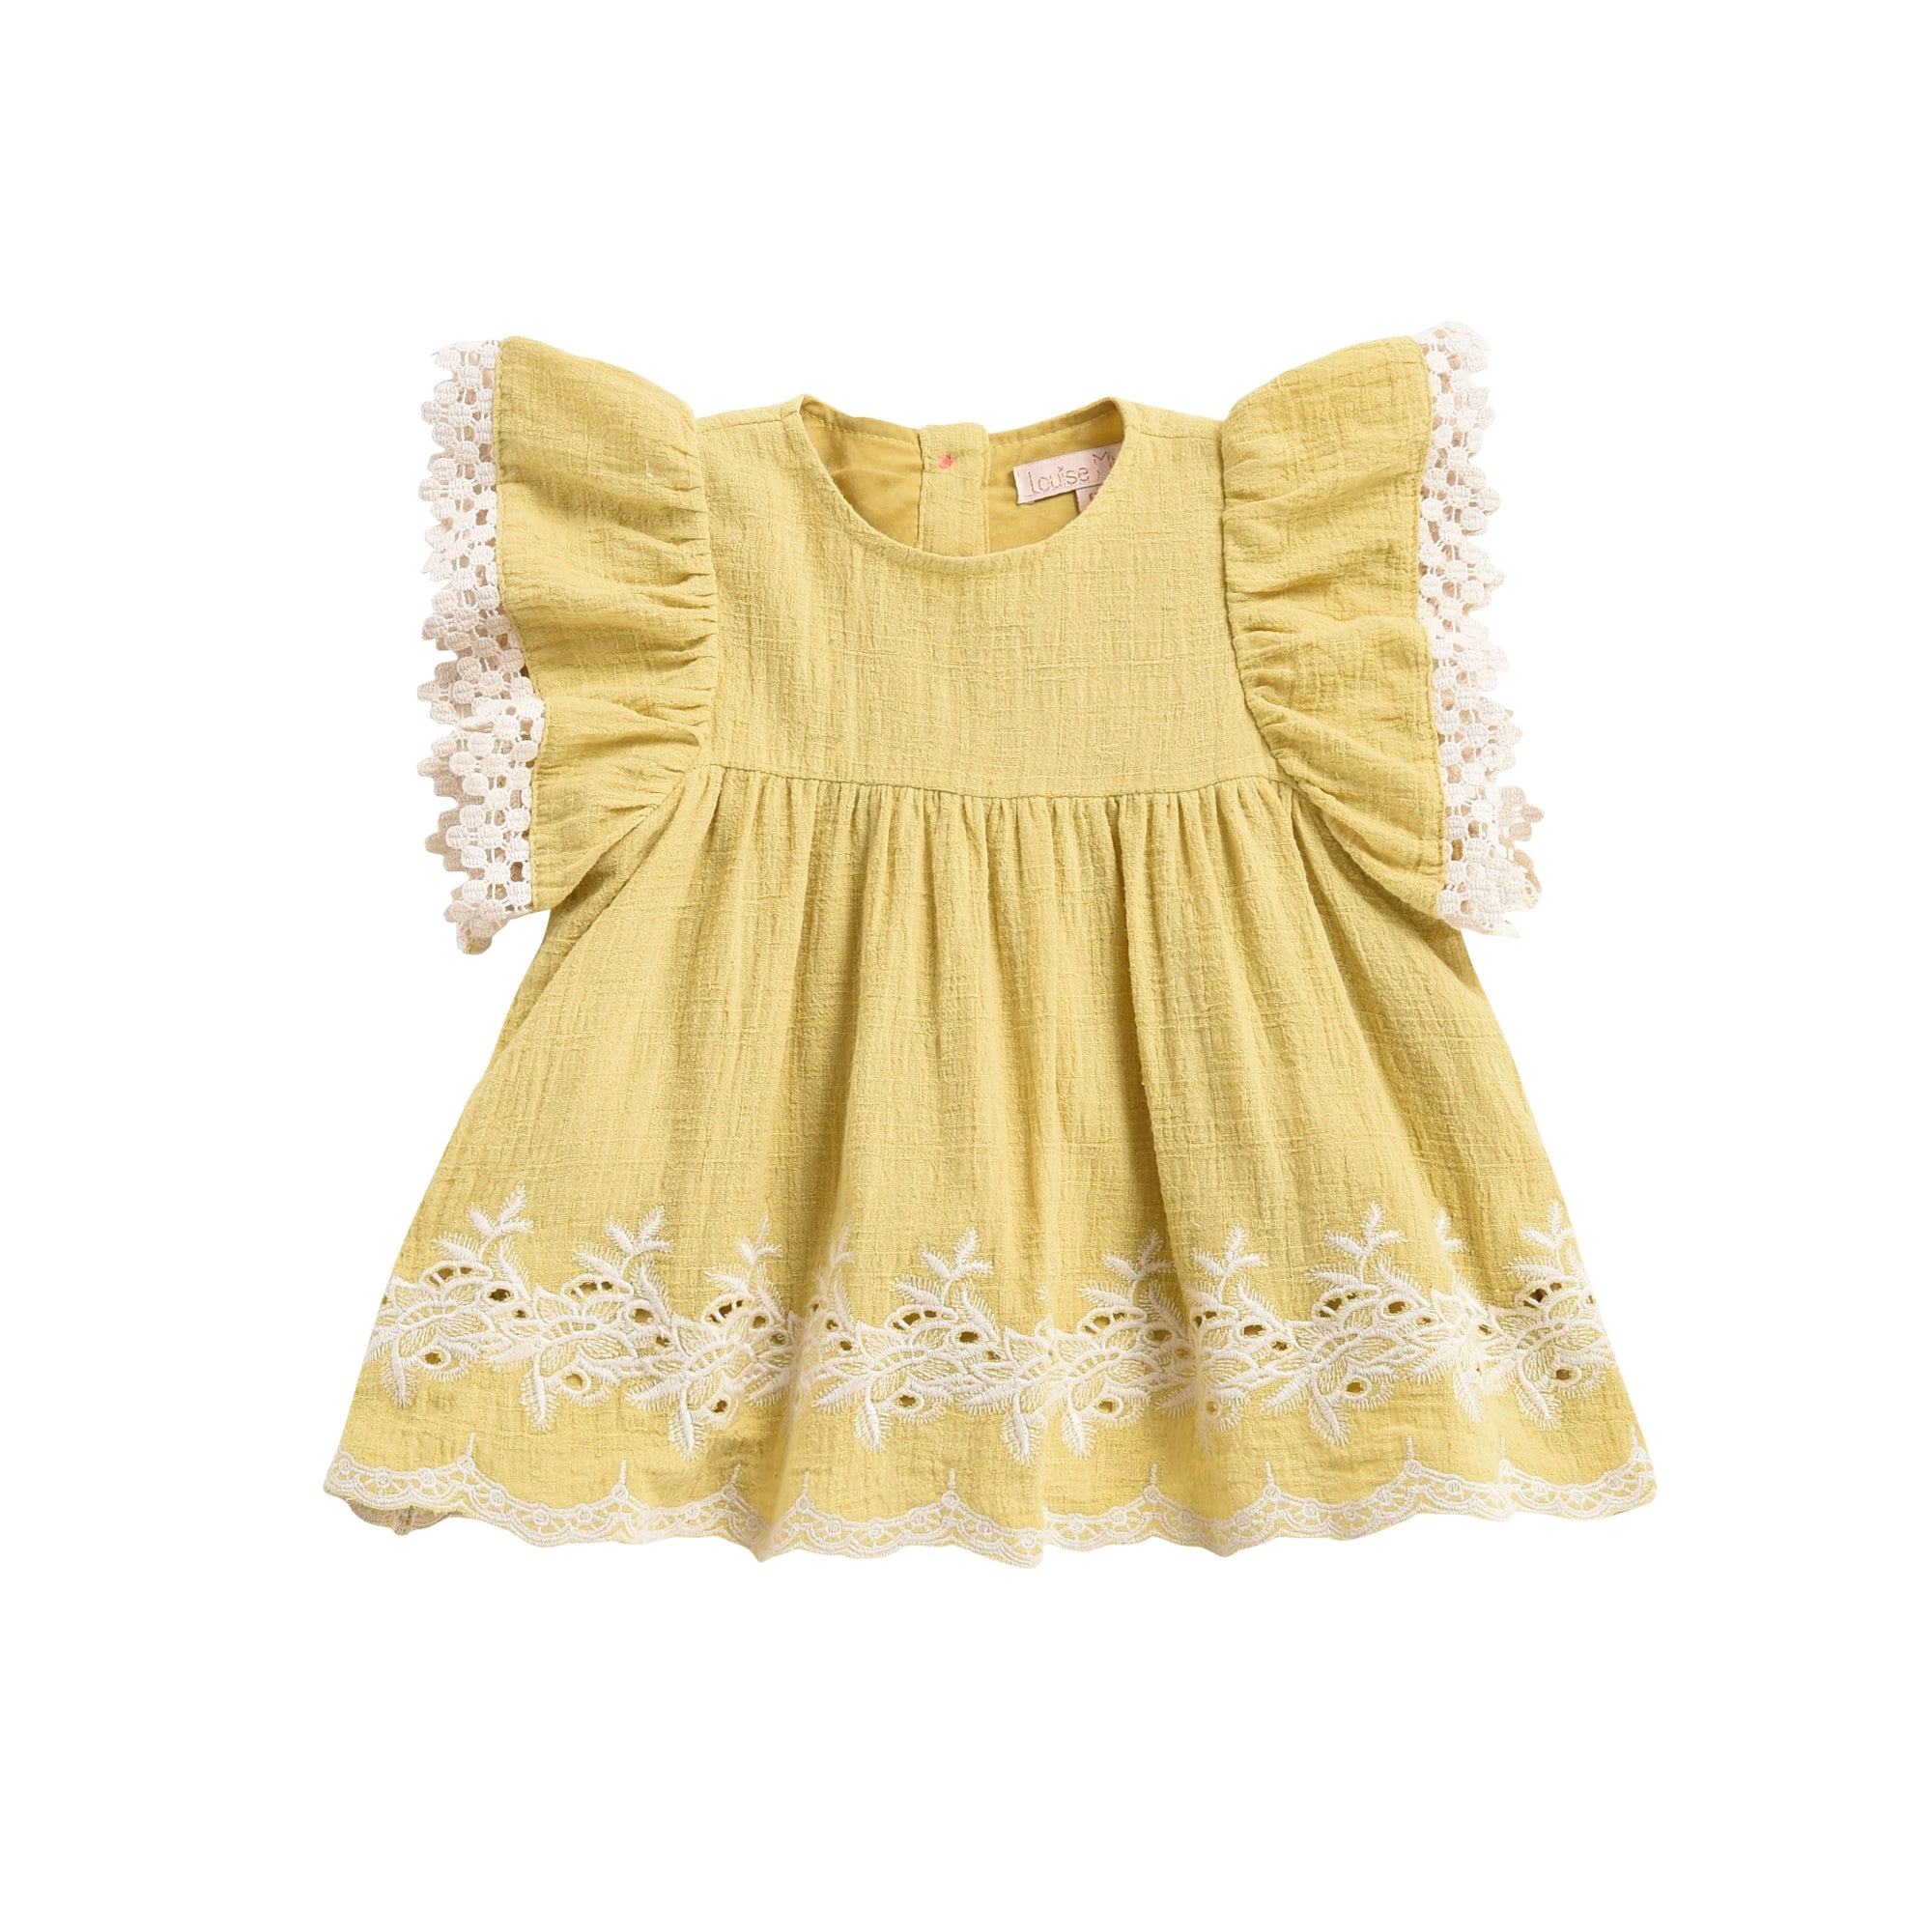 Girls Soft Yellow Cotton Dress